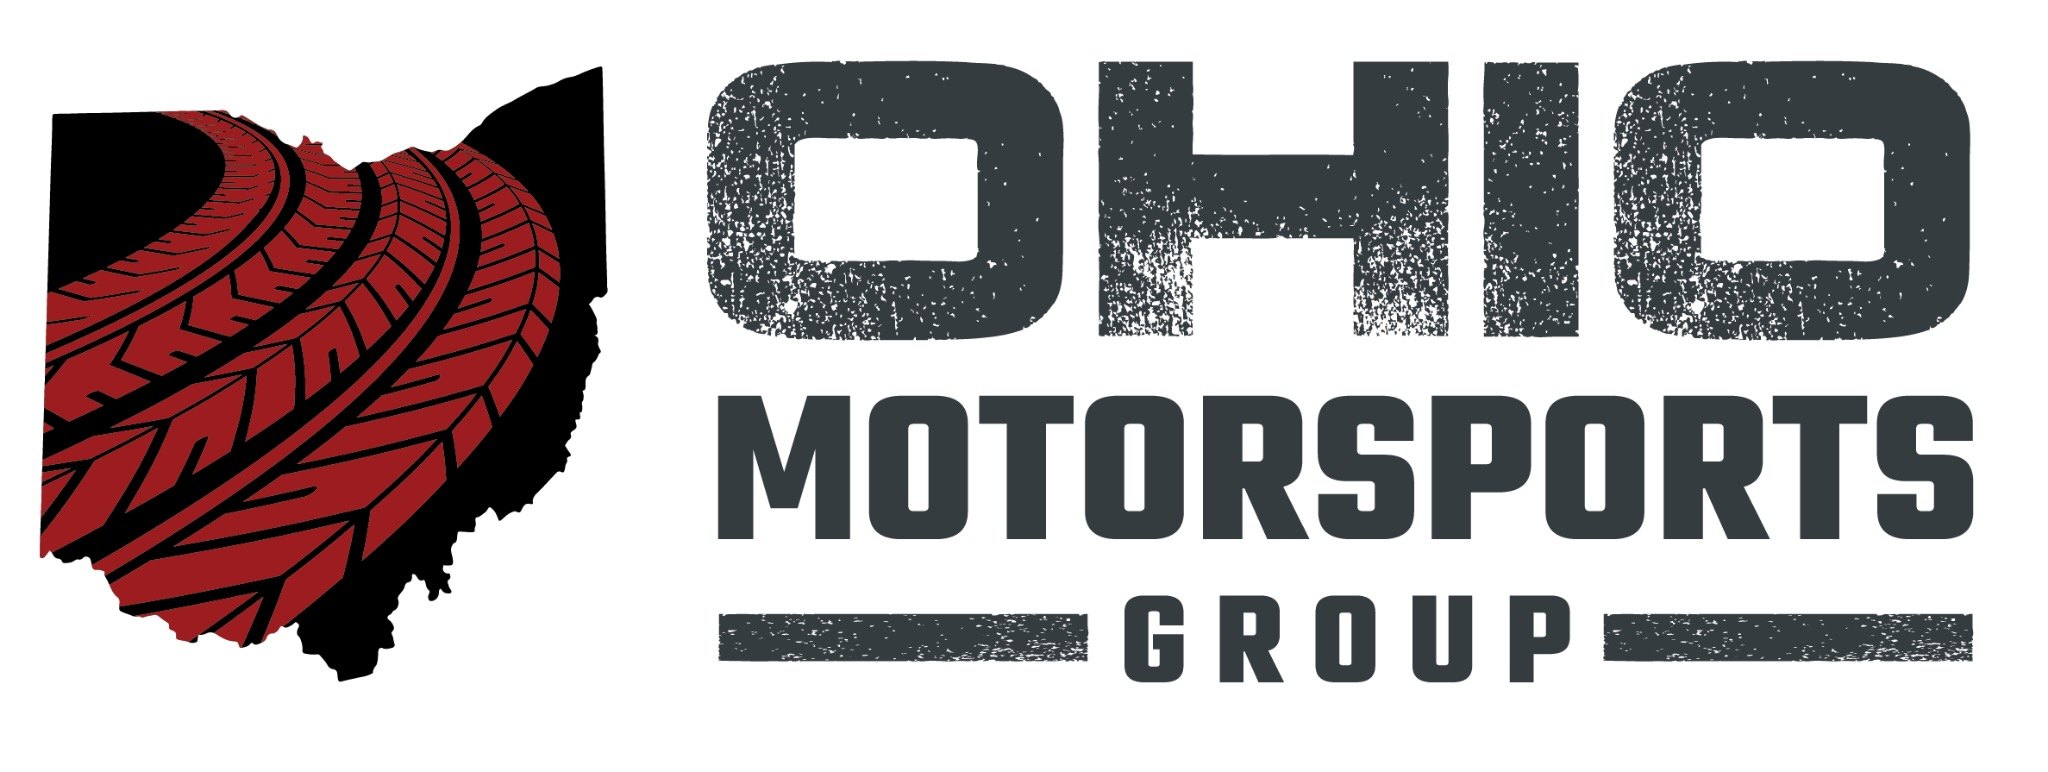 Ohio Motorsports Group